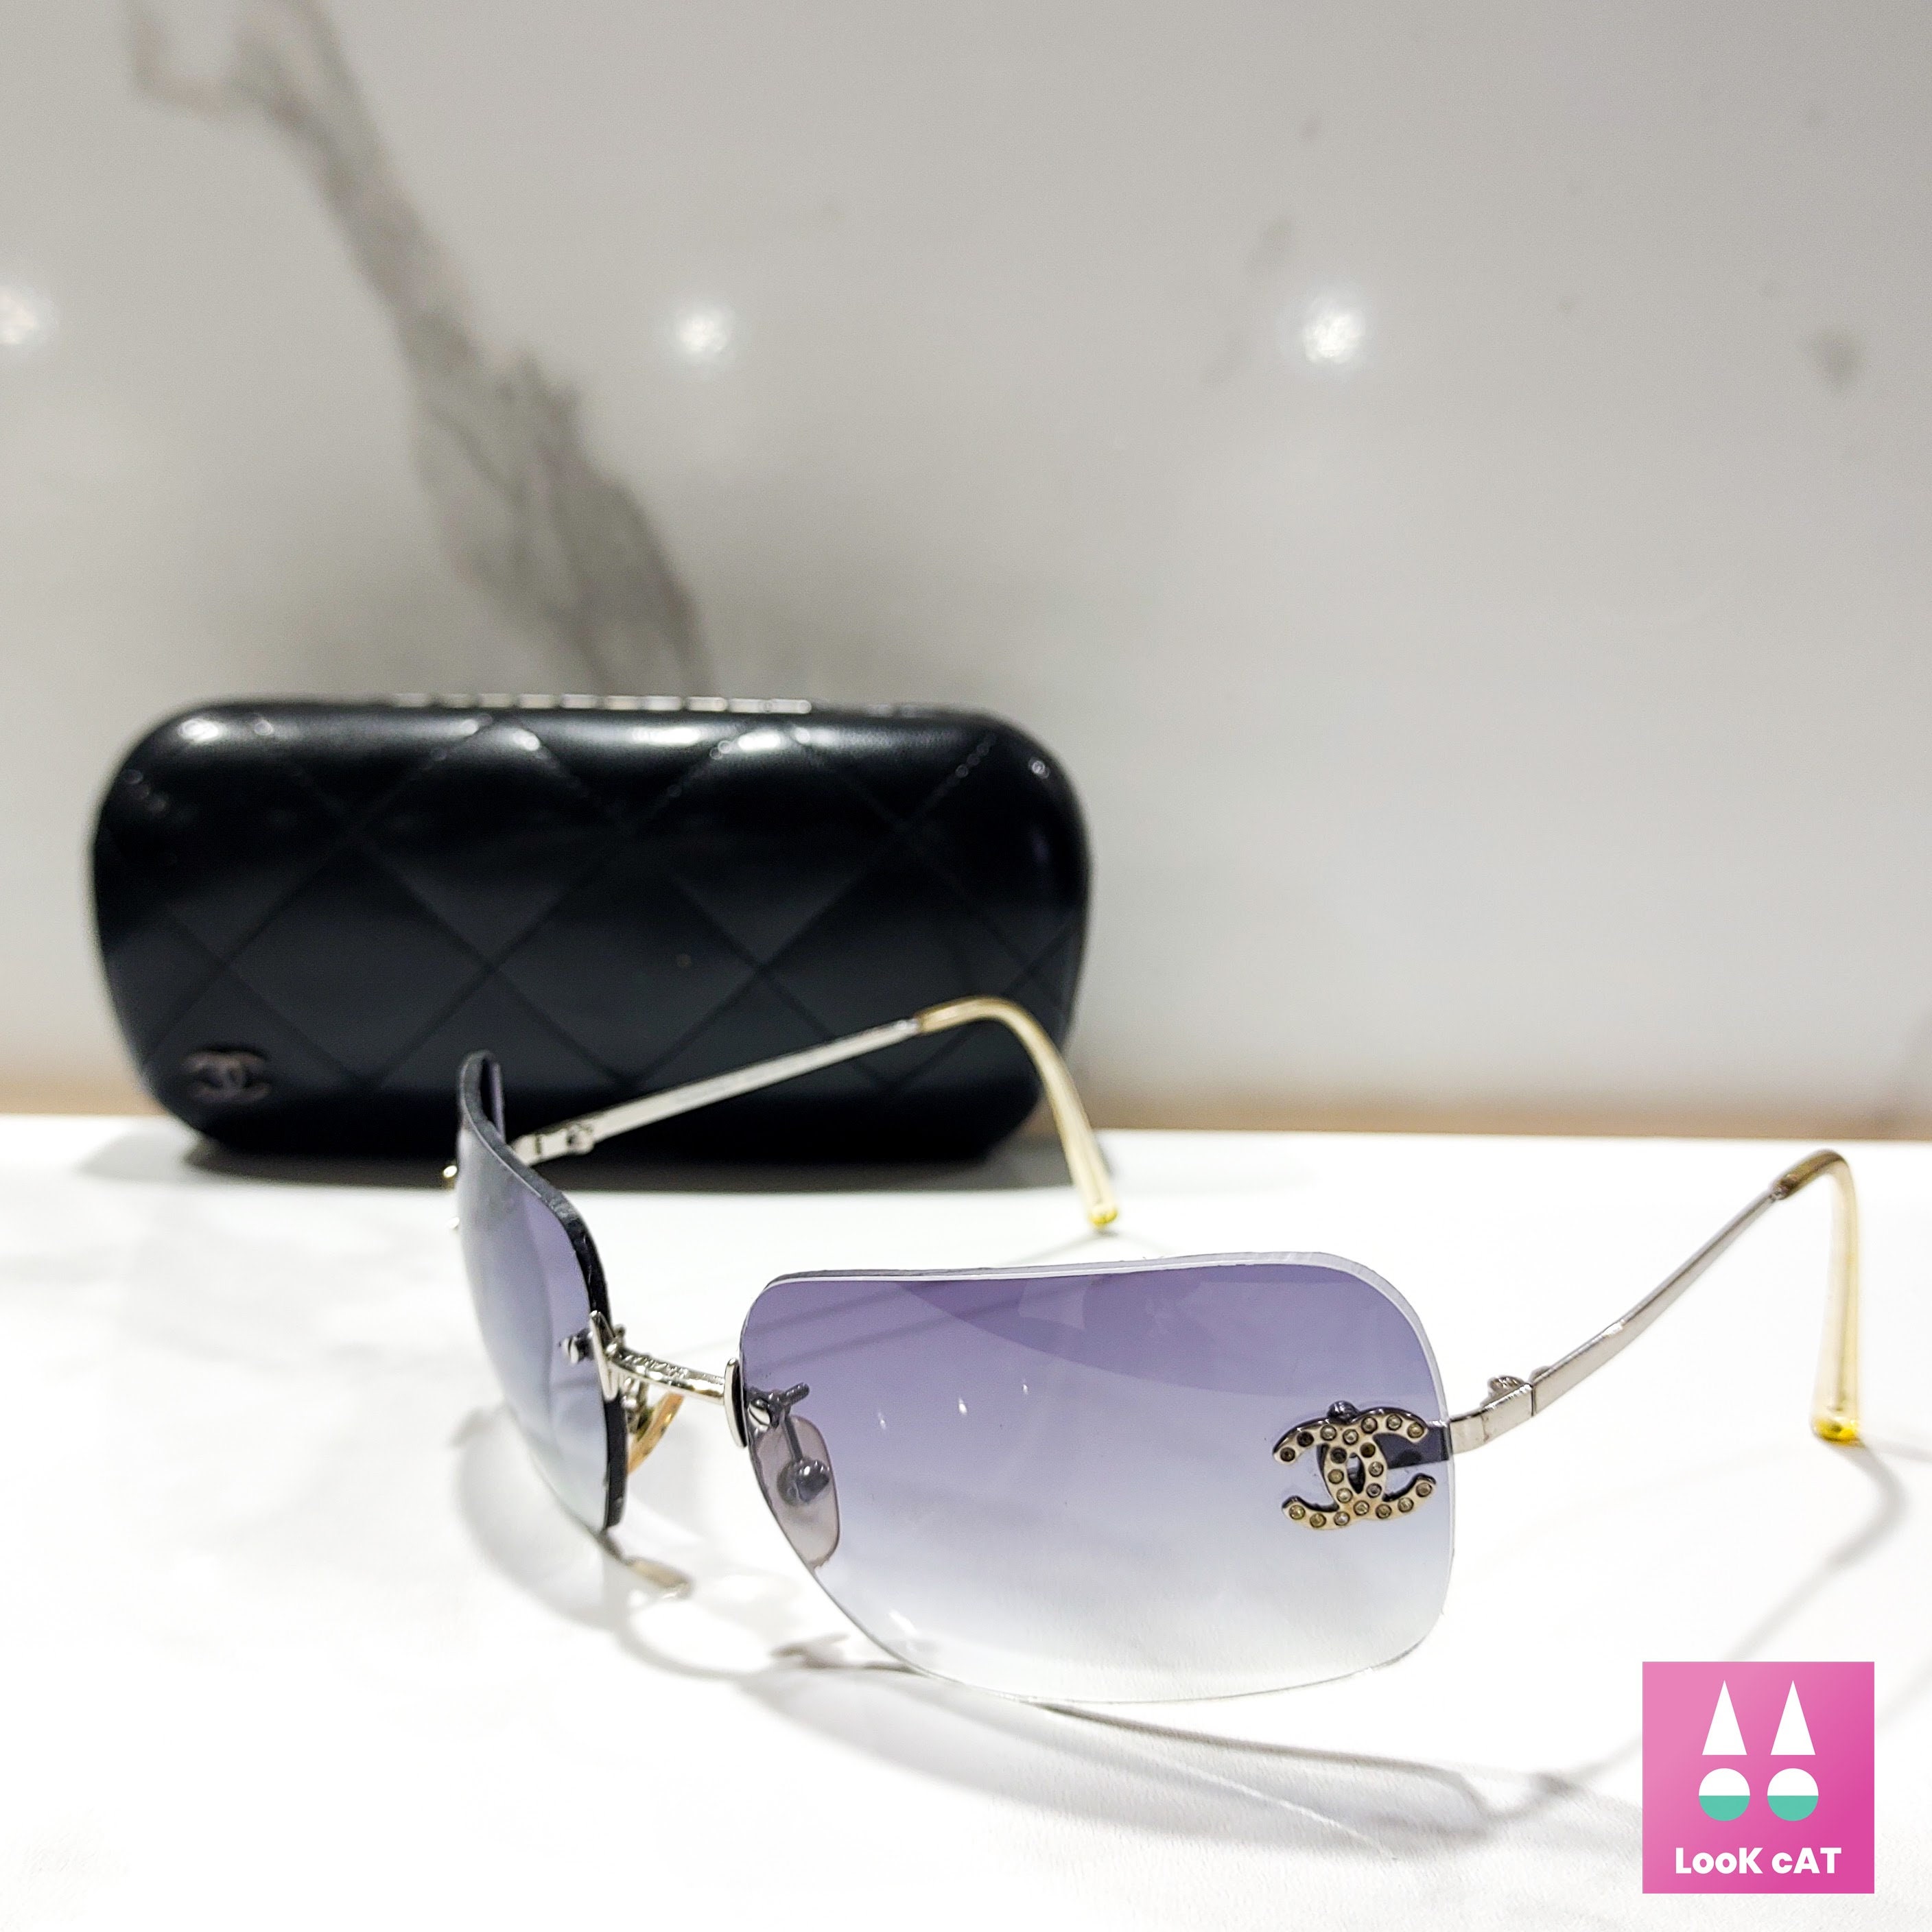 Chanel sunglasses 4017-D silver x clear rhinestone coco mark women's